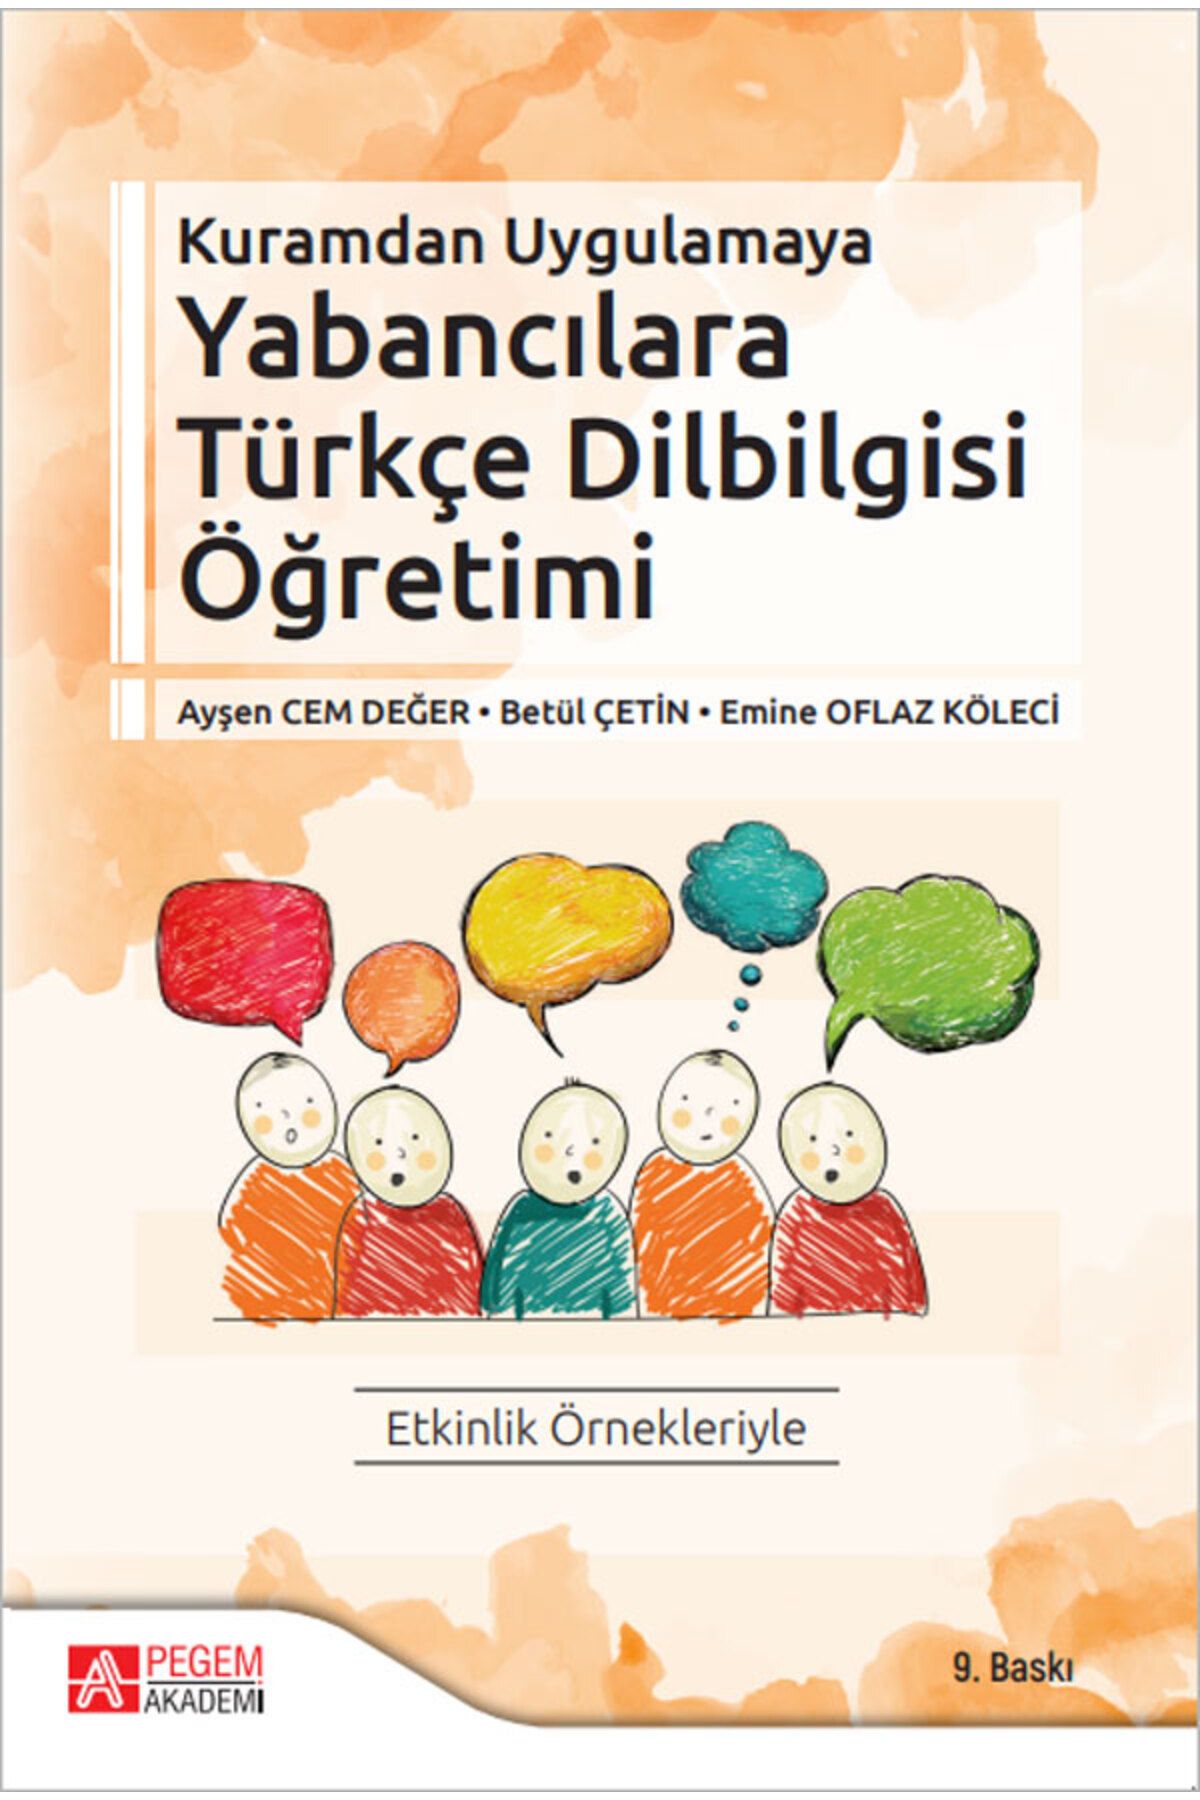 Pegem Akademi Yayıncılık Kuramdan Uygulamaya Yabancılara Türkçe Dilbilgisi Öğretimi